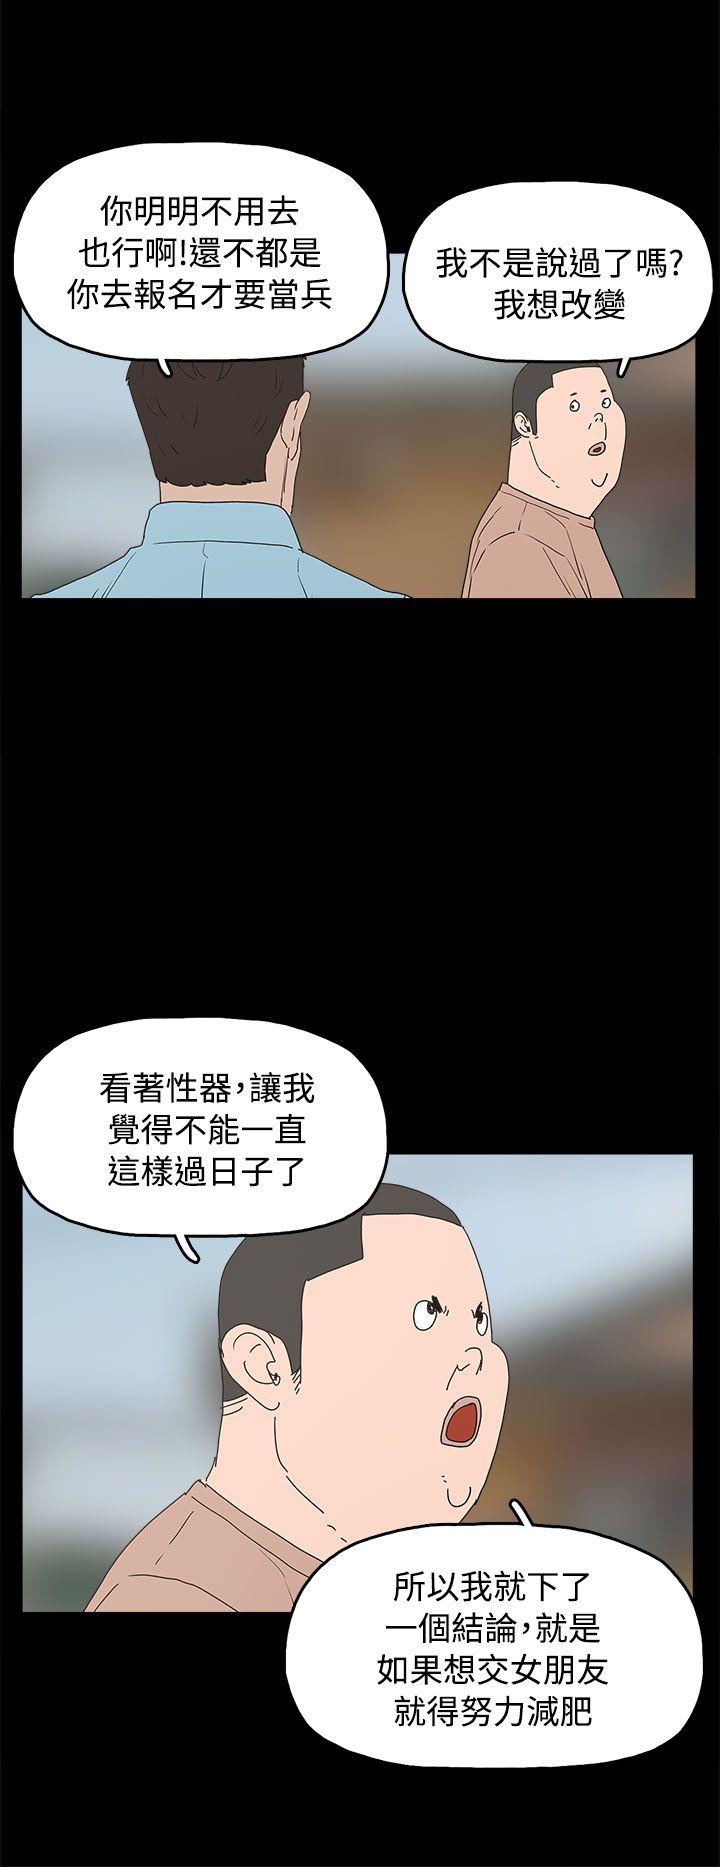 崔强性气与朴银慧  最终话 漫画图片2.jpg